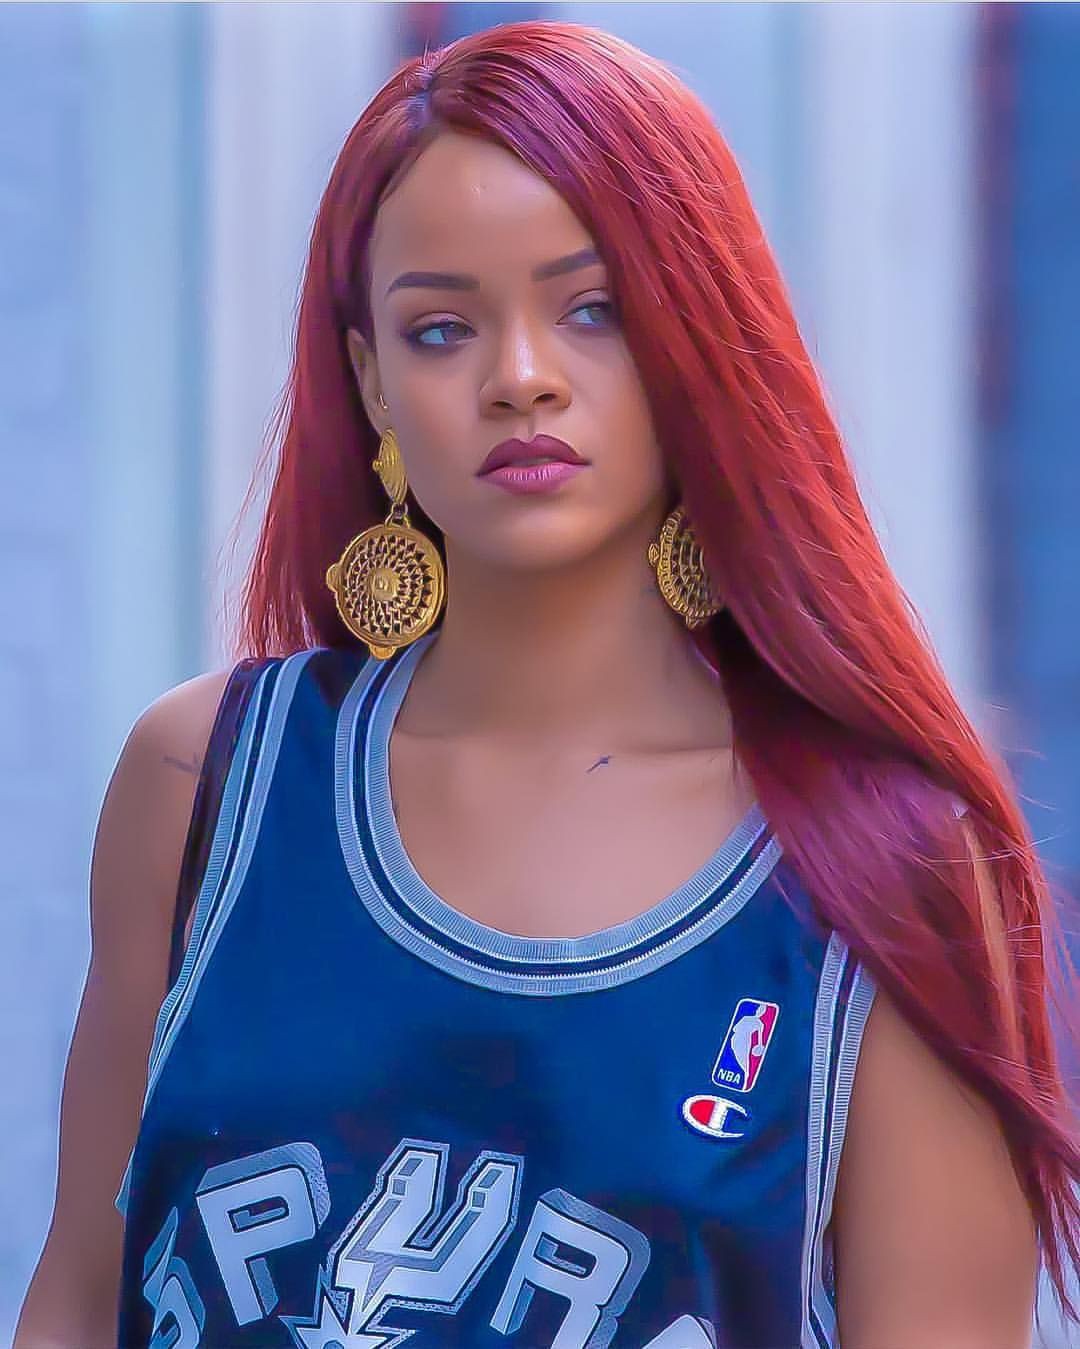 Lo último y mejor instagram rihanna 2019, Más - Enero 2019: Jay Z,  Rihanna marino,  Los mejores looks de Rihanna  